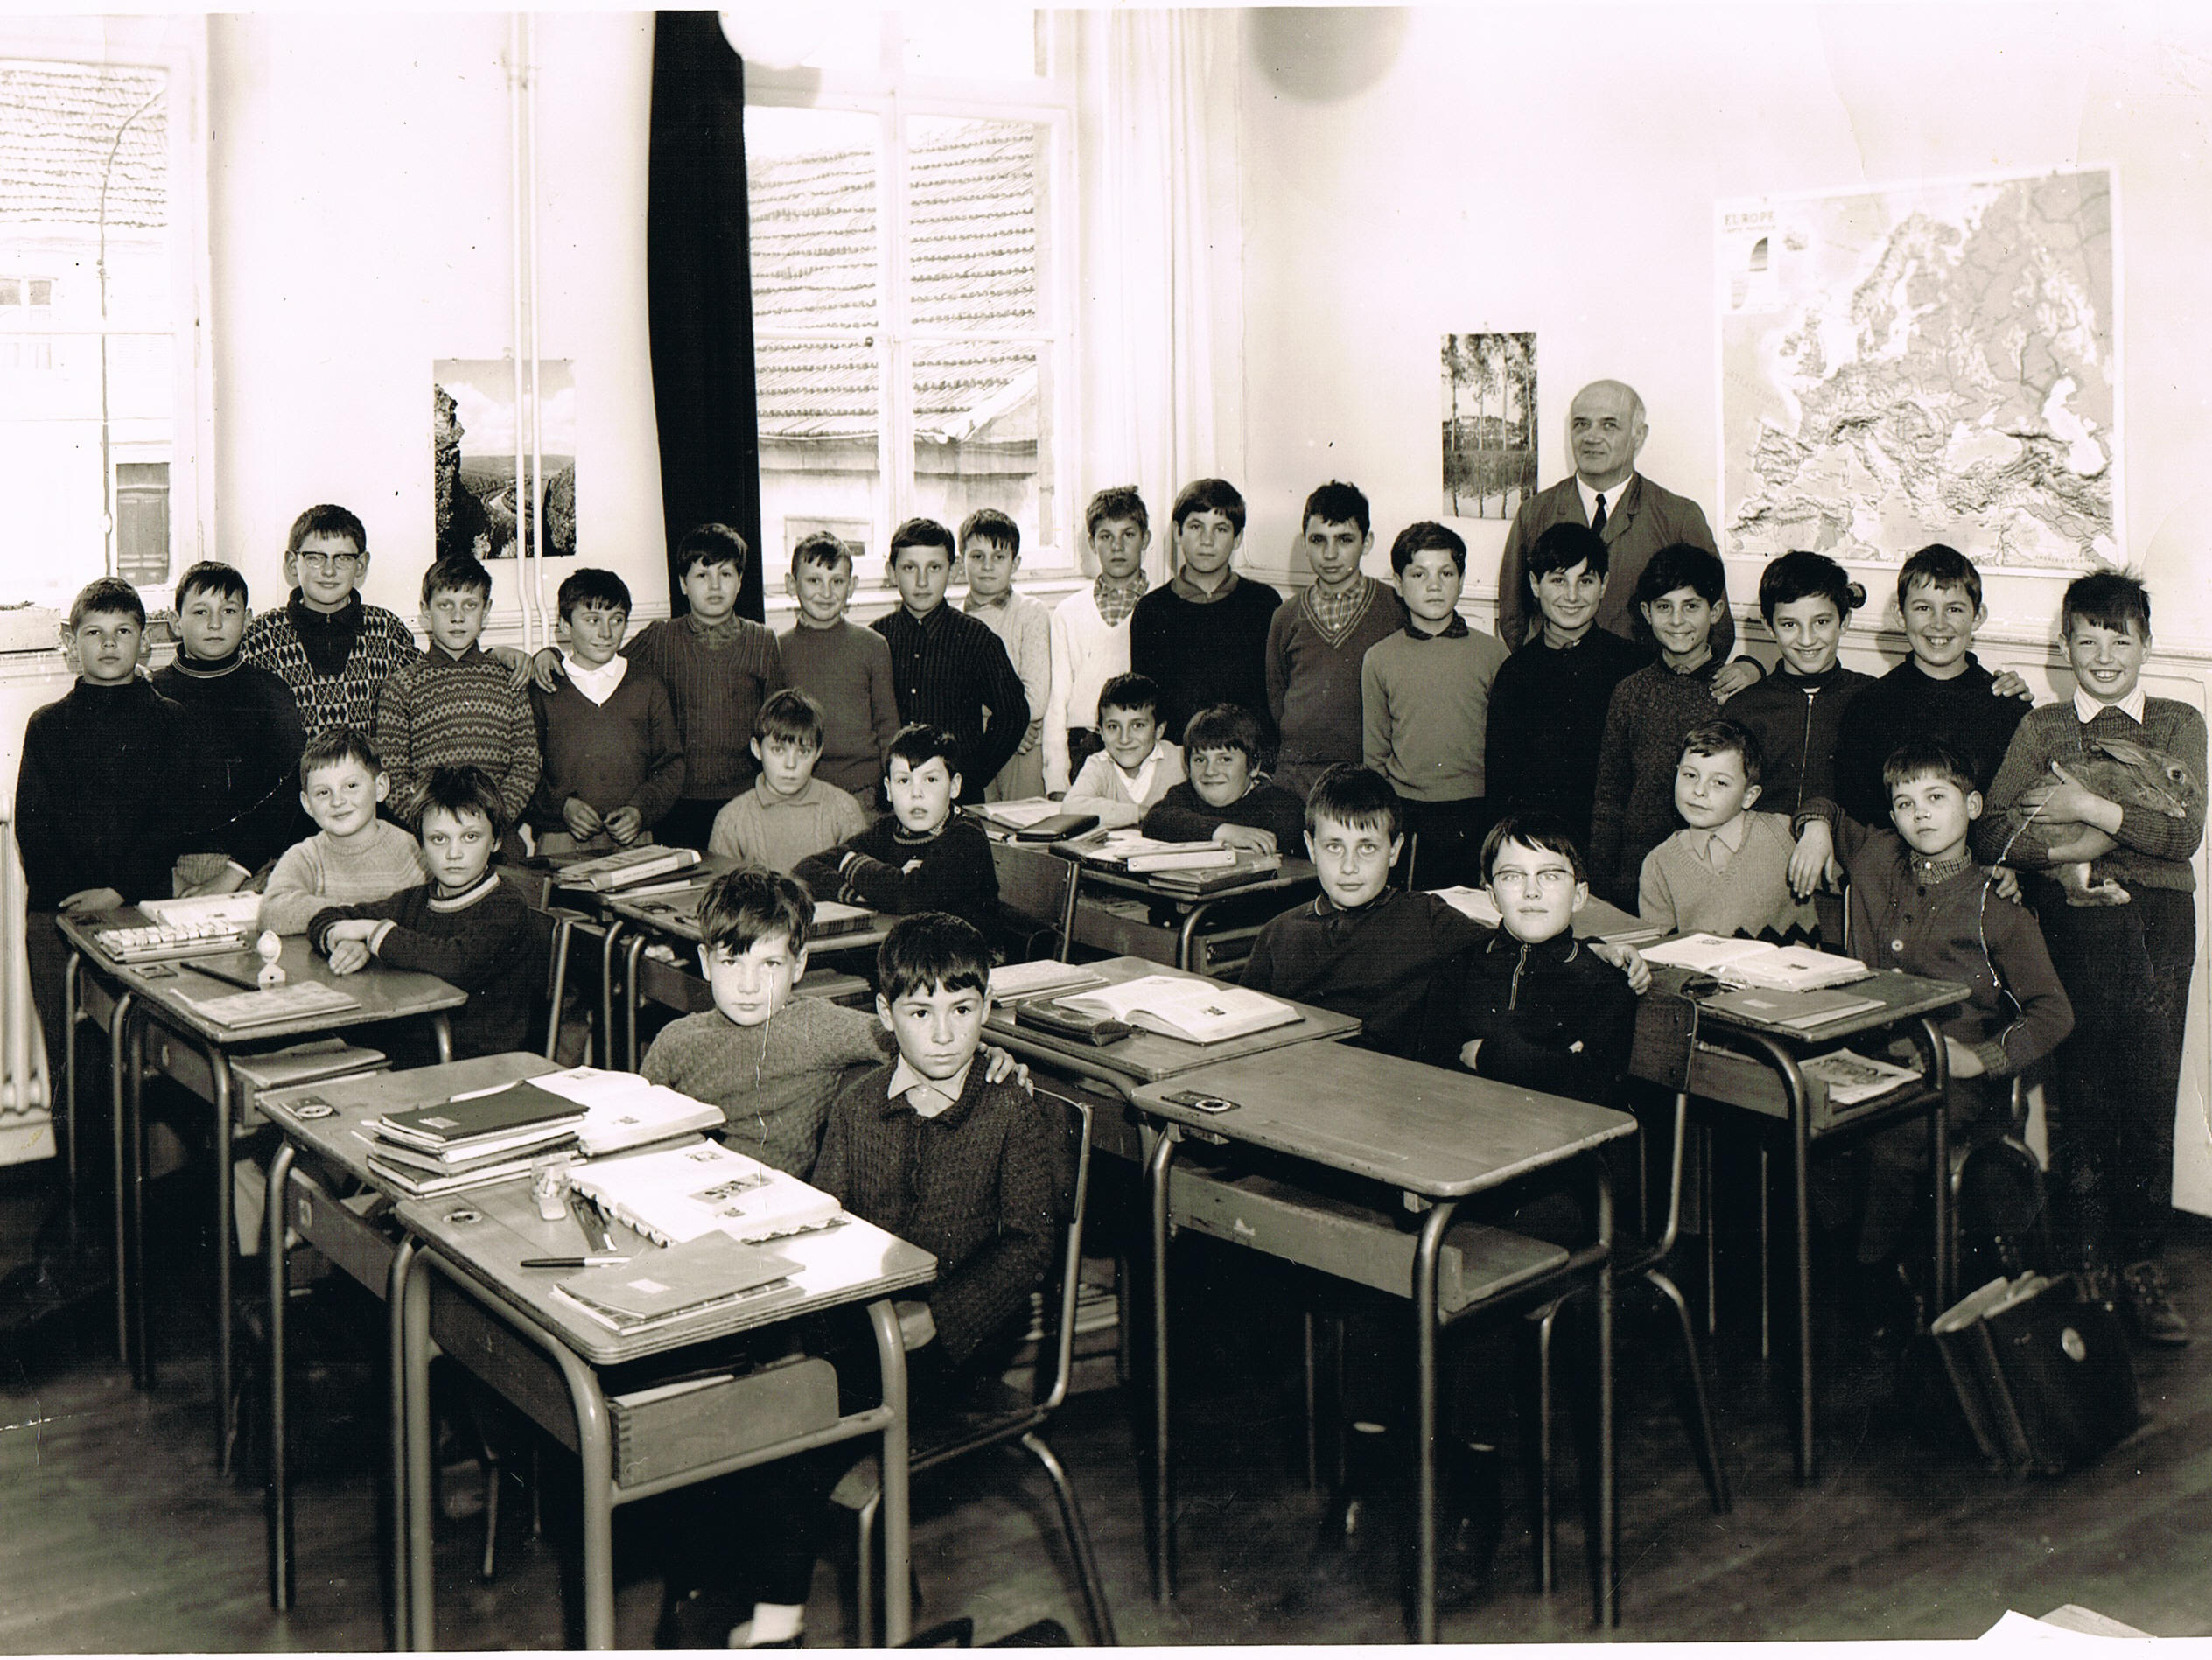 Classe anne de naissance des photographis : 1958 et 1959 - Instituteur : Monsieur  Martin